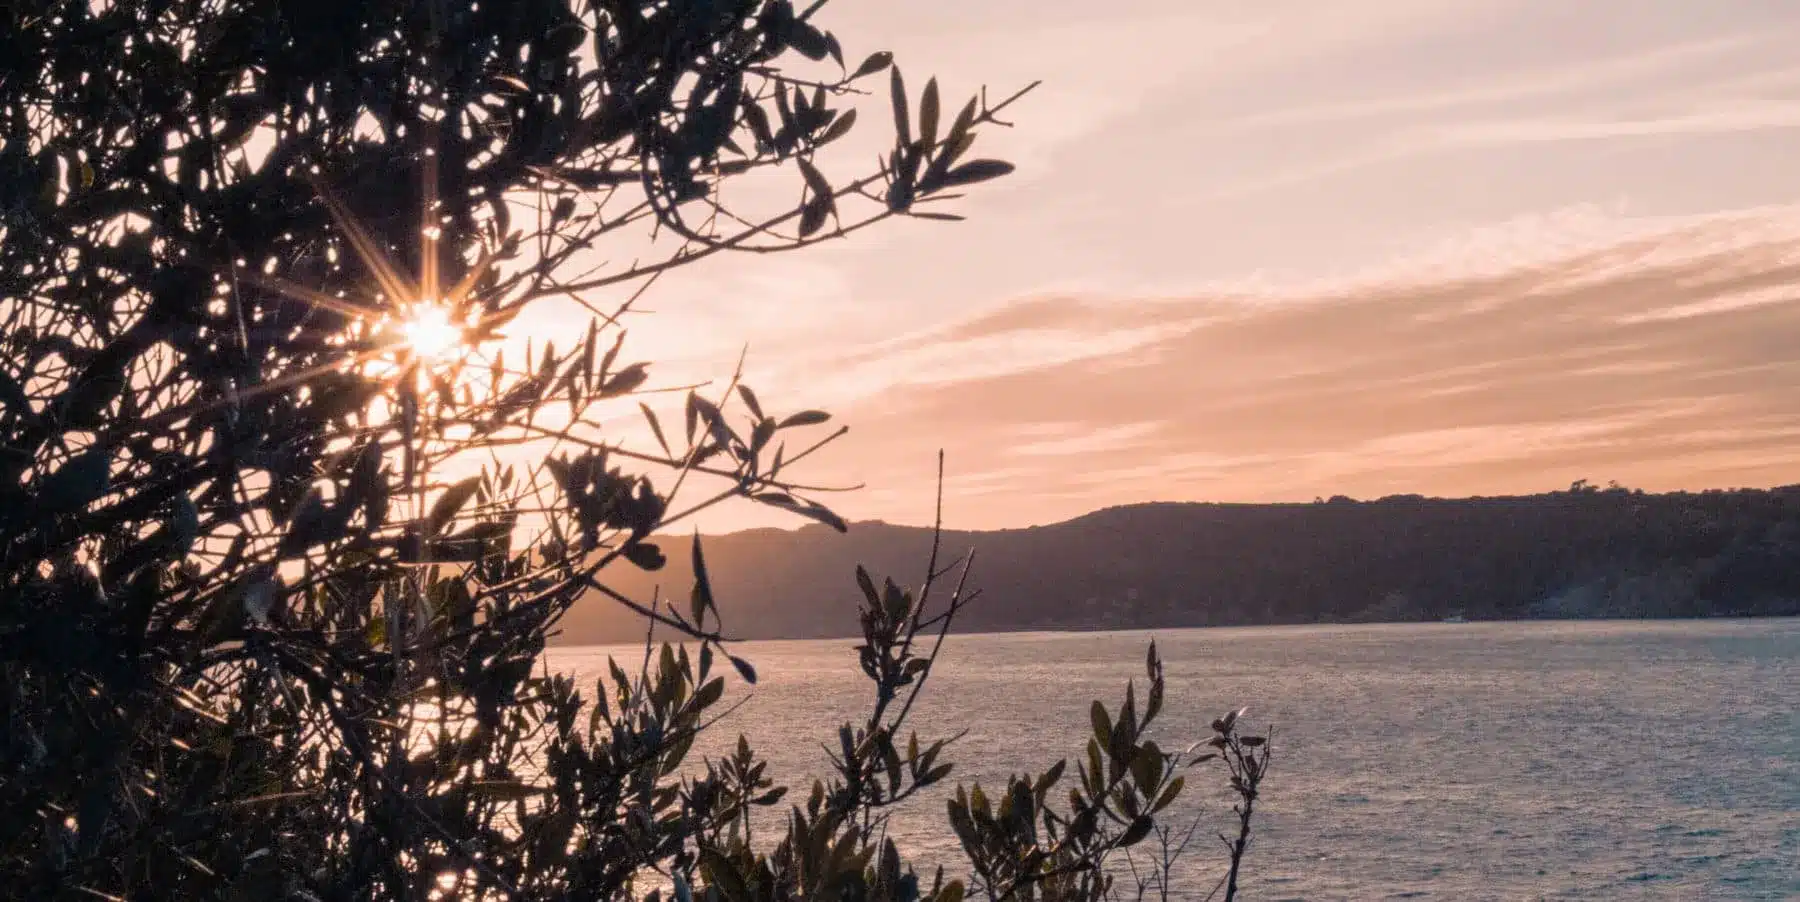 Sonnenuntergang über einem ruhigen Meer mit Sonnenstrahlen, die durch die Äste eines Baums auf der linken Seite fallen, mit Blick auf eine entfernte hügelige Küste vom Deck eines Katamarans.